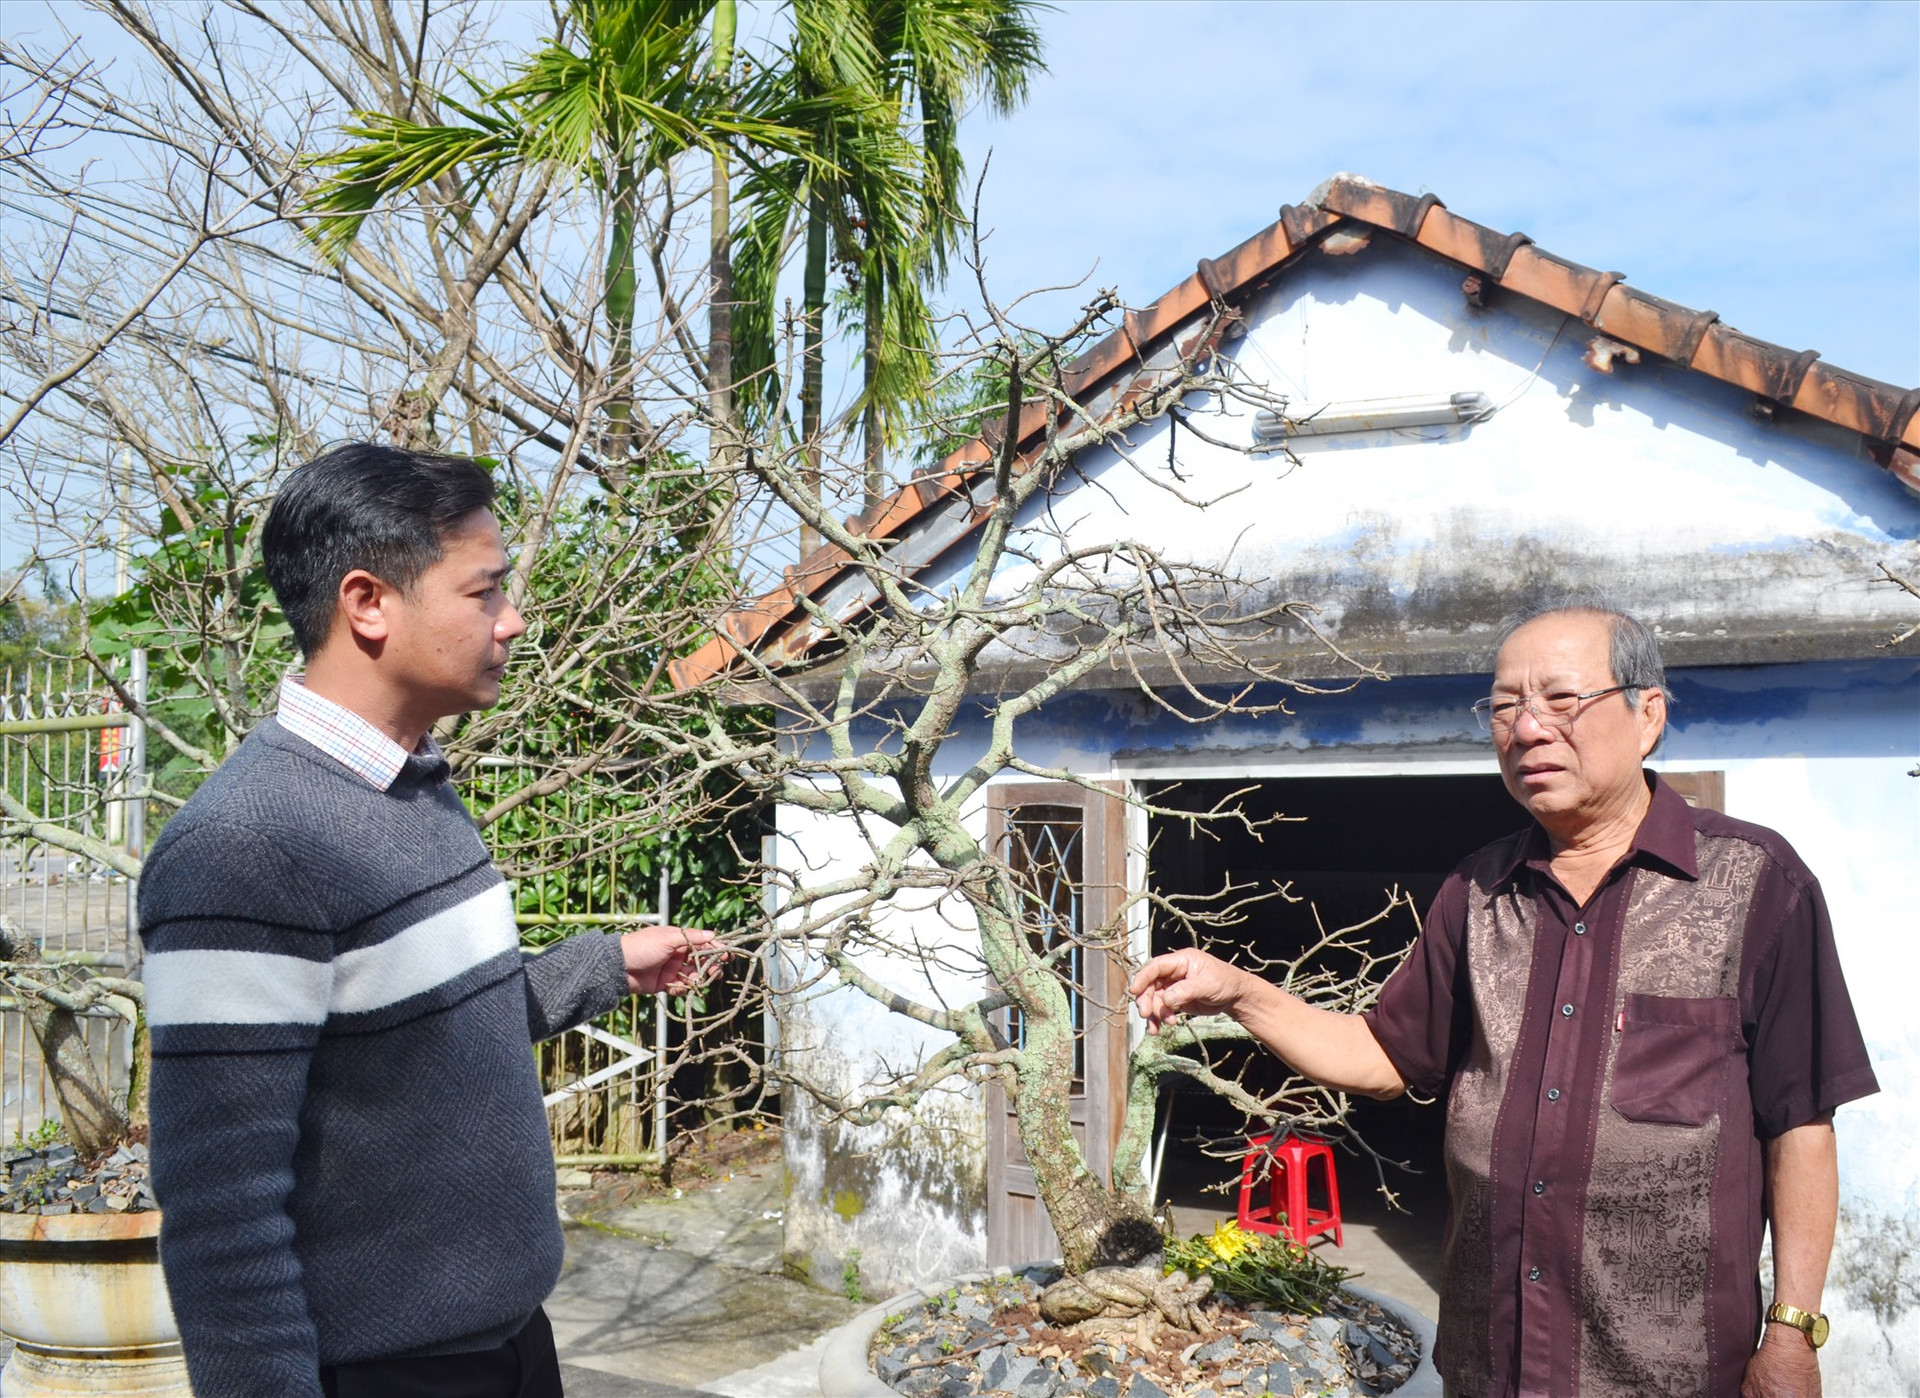 Ông Nguyễn Ngọc Tân (phải) - Bí thư chi bộ khu phố 9 (Hà Lam) nói chuyện với ông Hoàng Công Tài - cán bộ Văn phòng Đảng ủy thị trấn Hà Lam về công tác xây dựng Đảng trên địa bàn. Ảnh: VIỆT NGUYỄN